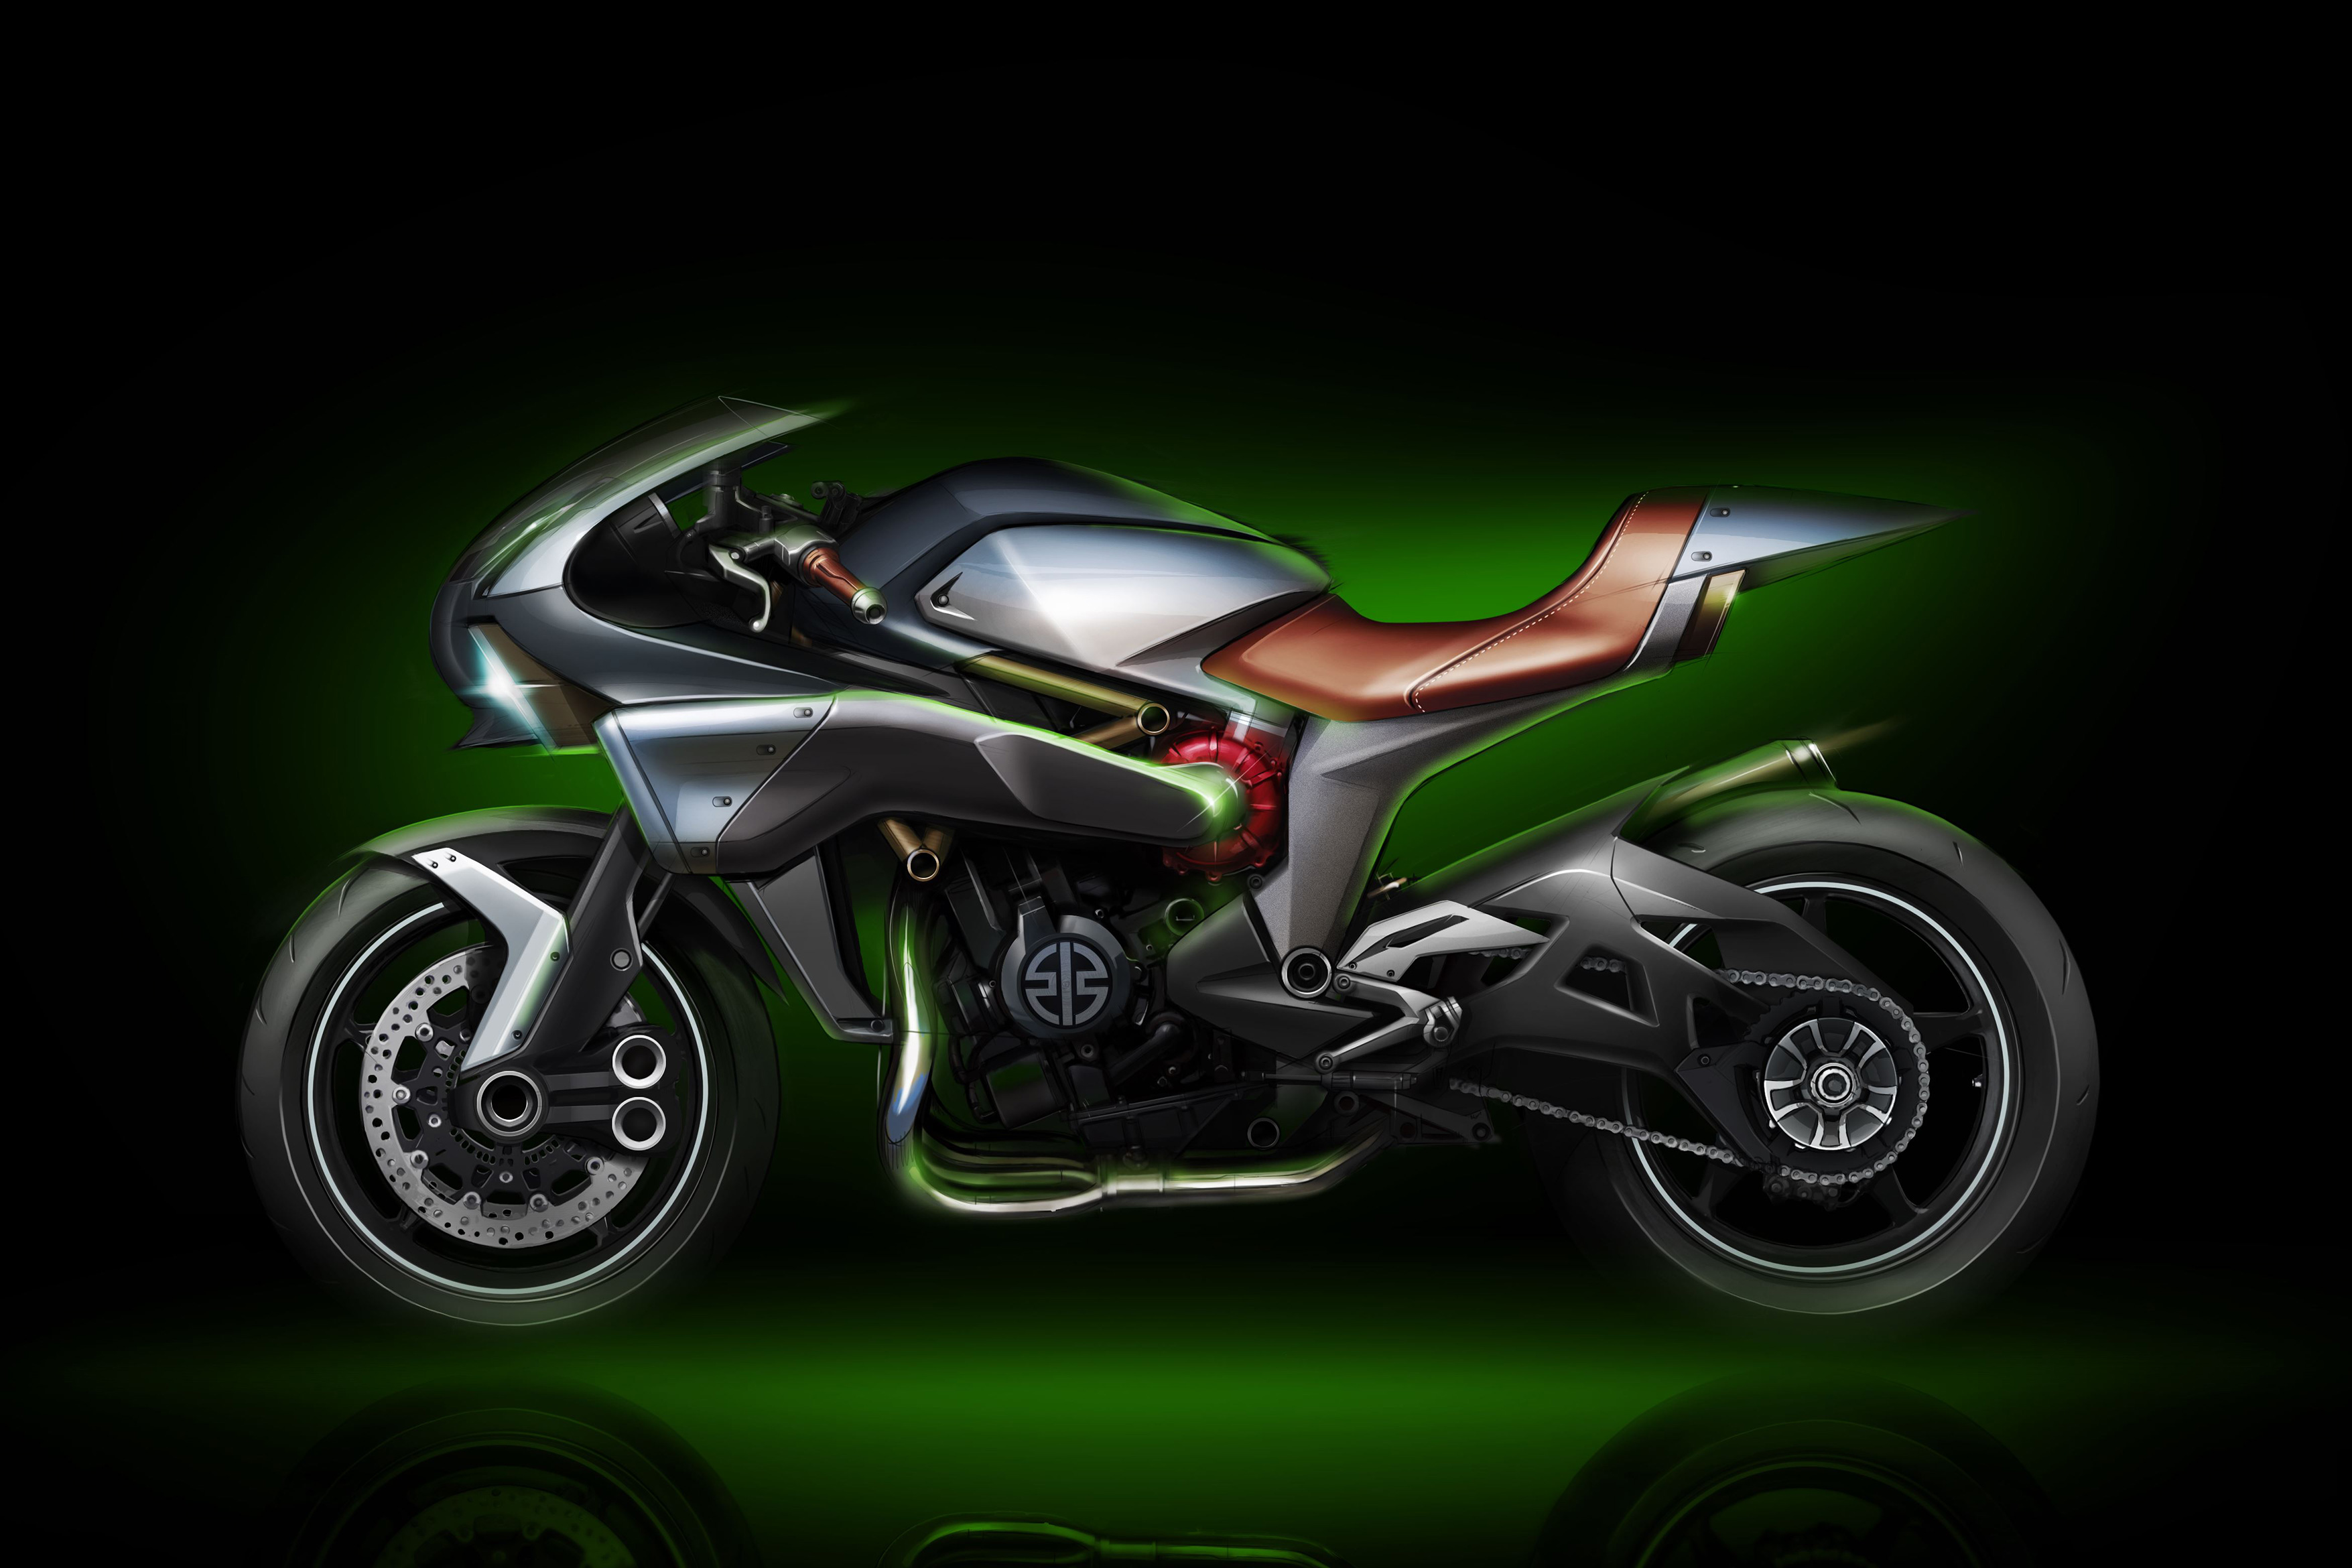 Kawasaki's new super-charged concept